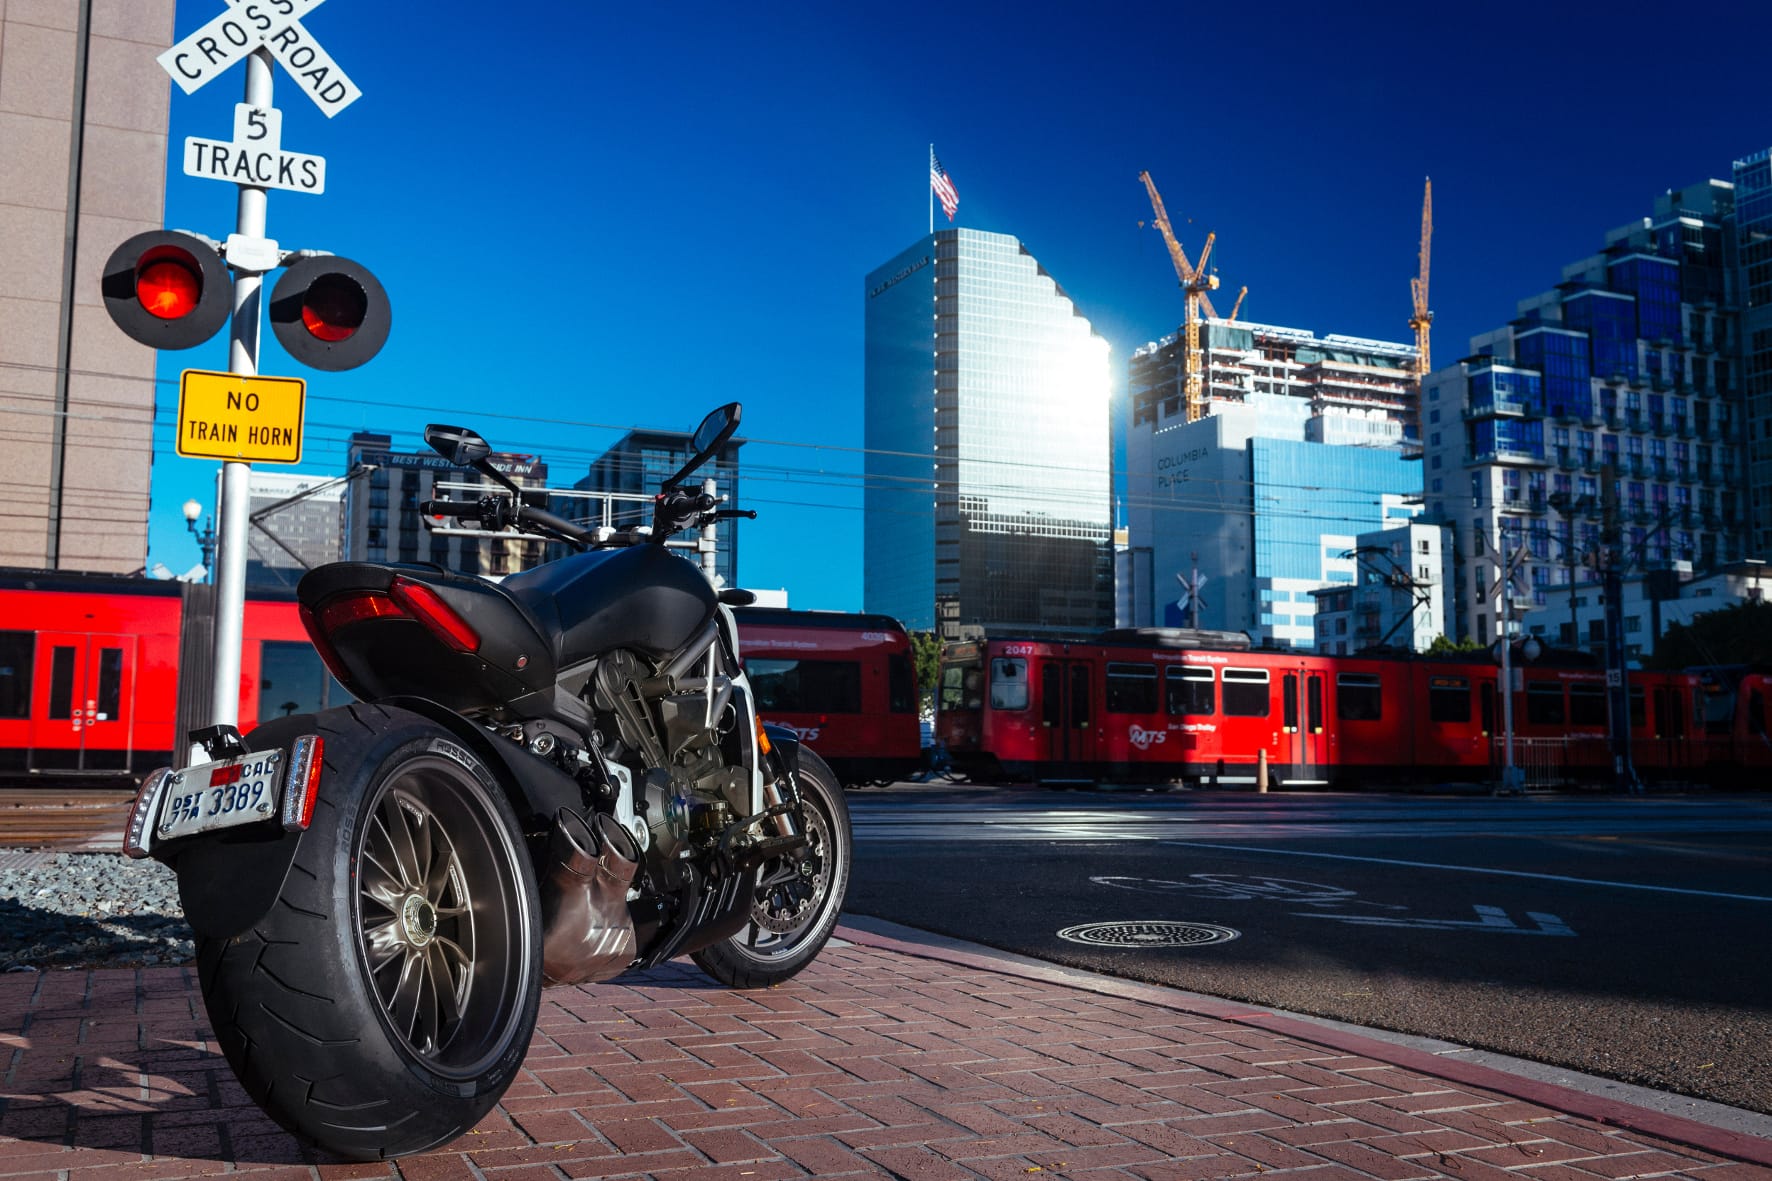 Diese Maschine ist mehr als ein Motorrad: Die Ducati XDiavel ist ein Statement, das Freunde der "bigger is better"-Mentalität voll unterschreiben werden.